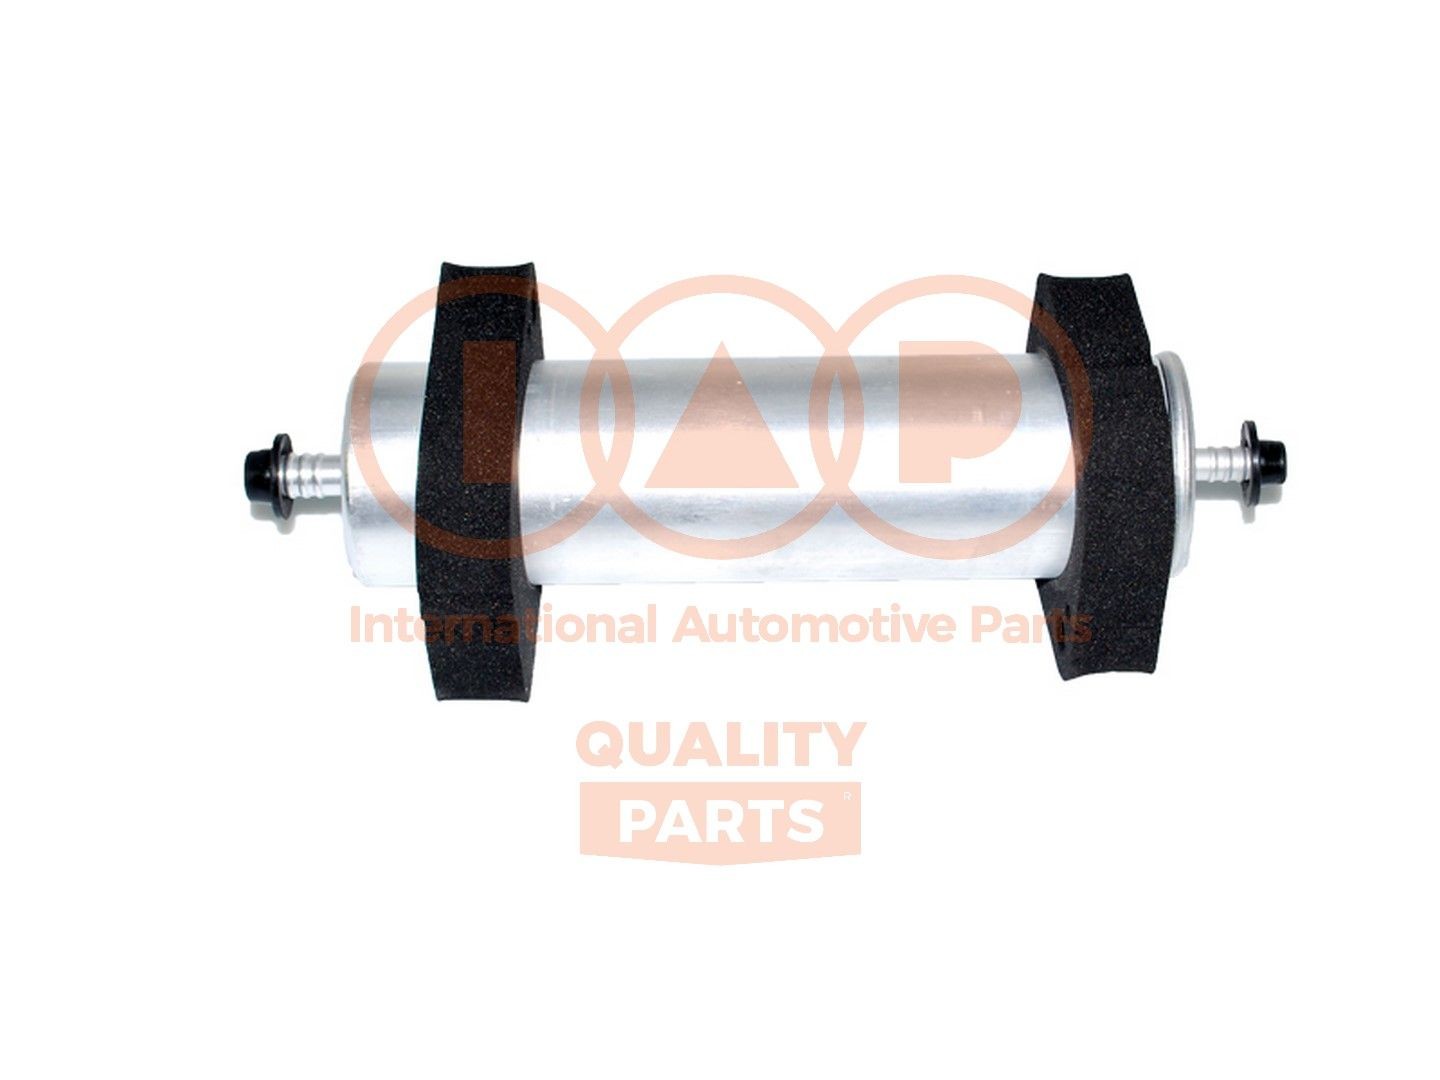 Original IAP QUALITY PARTS Fuel filters 122-50040 for AUDI A6